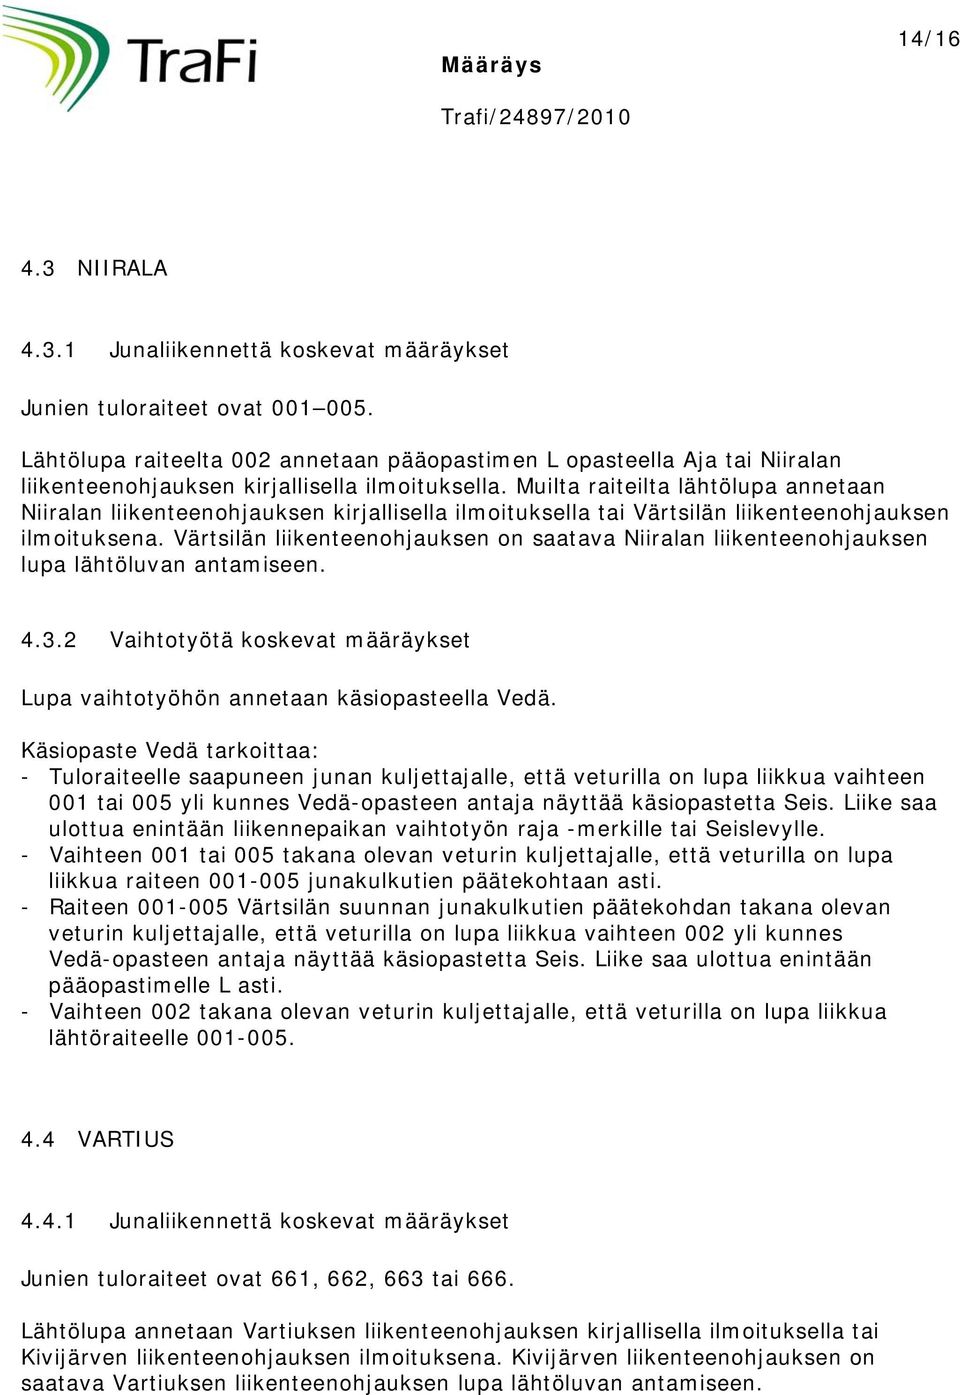 Muilta raiteilta lähtölupa annetaan Niiralan liikenteenohjauksen kirjallisella ilmoituksella tai Värtsilän liikenteenohjauksen ilmoituksena.